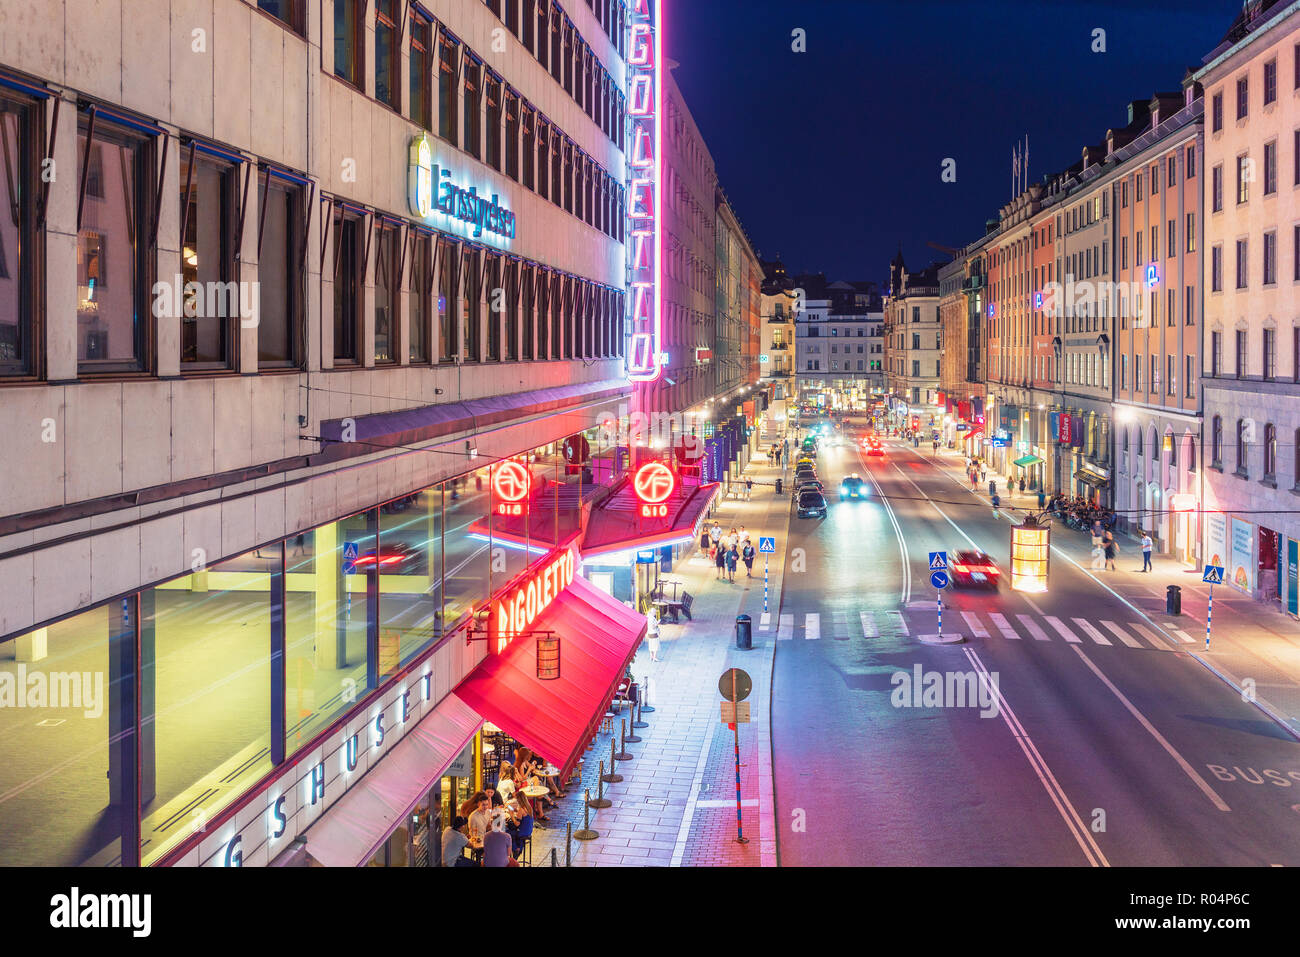 Kungsgatan (Kings Street) dans Norrmalm dans la nuit avec un tout premier cinéma théâtre en Suède Biograf Rigoletto sur le côté gauche, Stockholm, Suède Banque D'Images